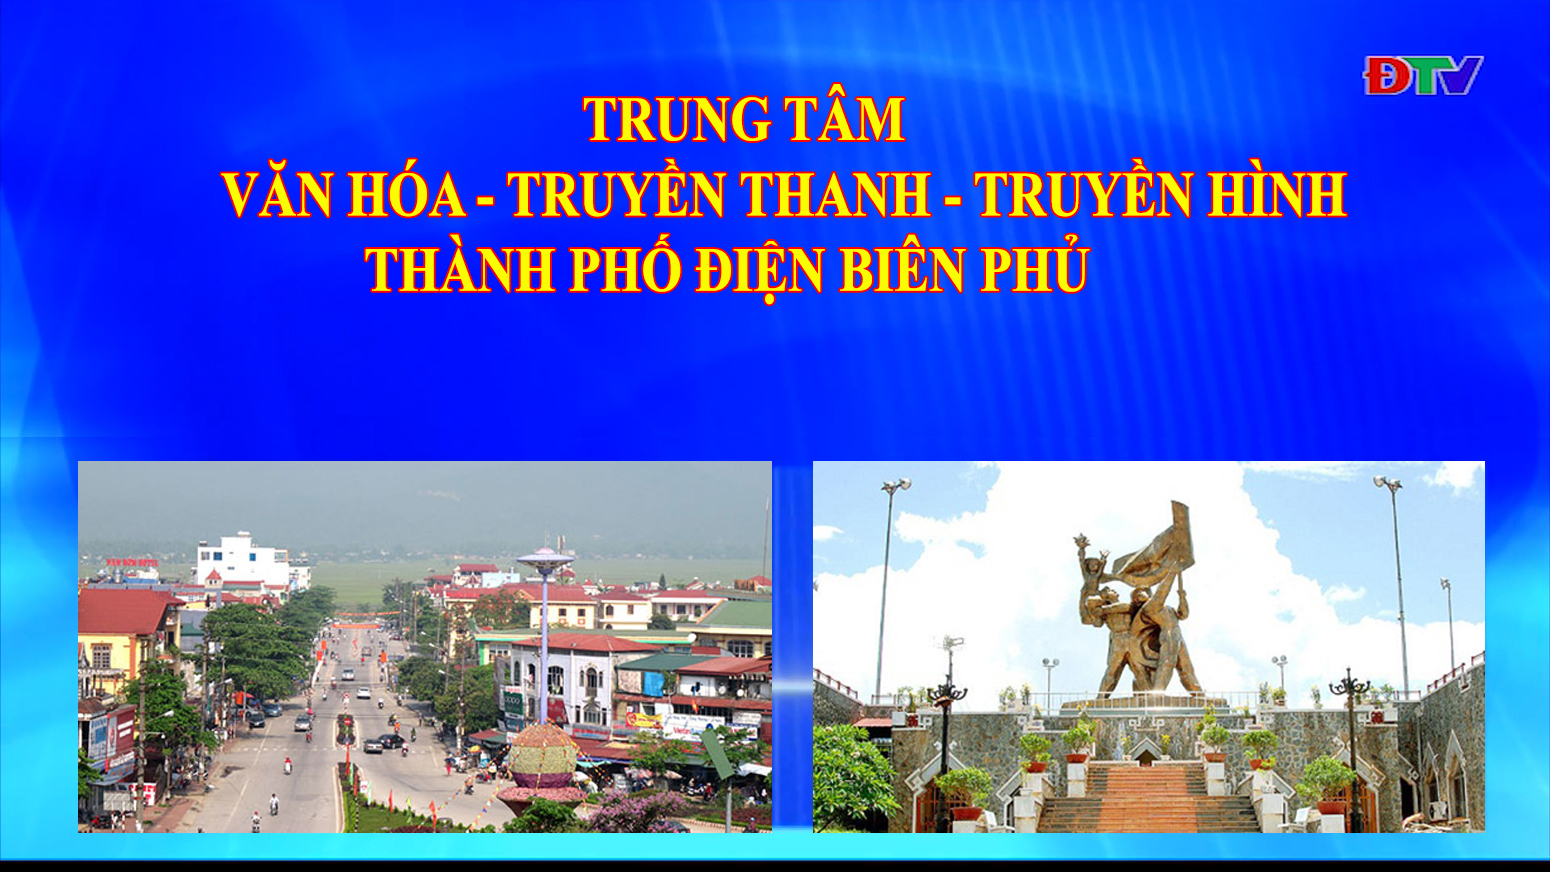 Trung tâm VH-TTTH thành phố Điện Biên Phủ (Ngày 26-7-2022)